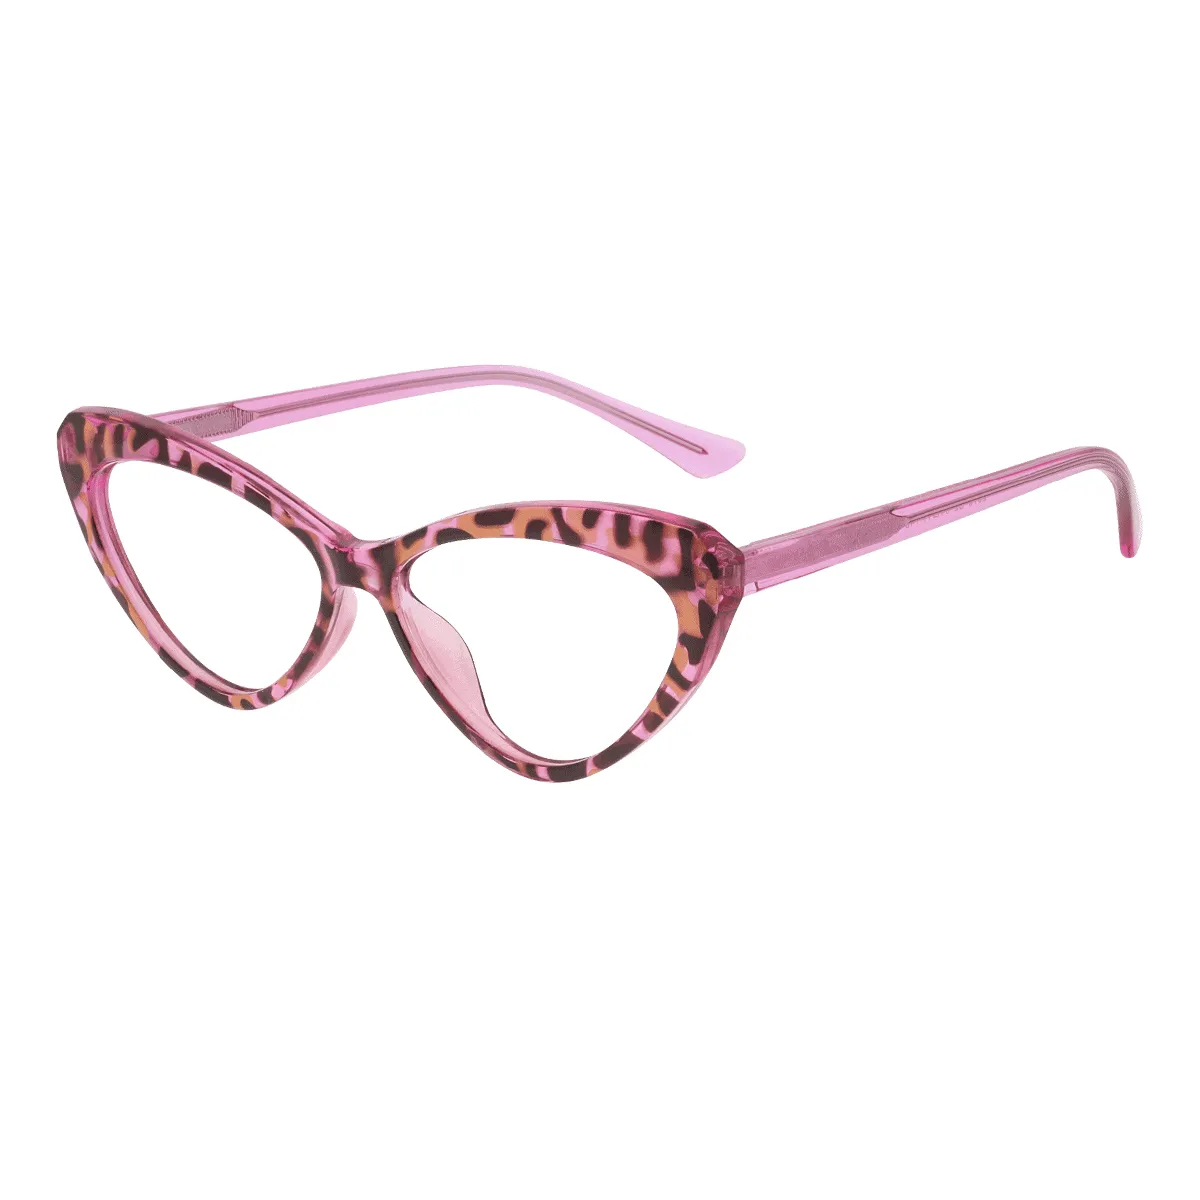 Latonia - Cat-eye Tortoiseshell Glasses for Women - EFE